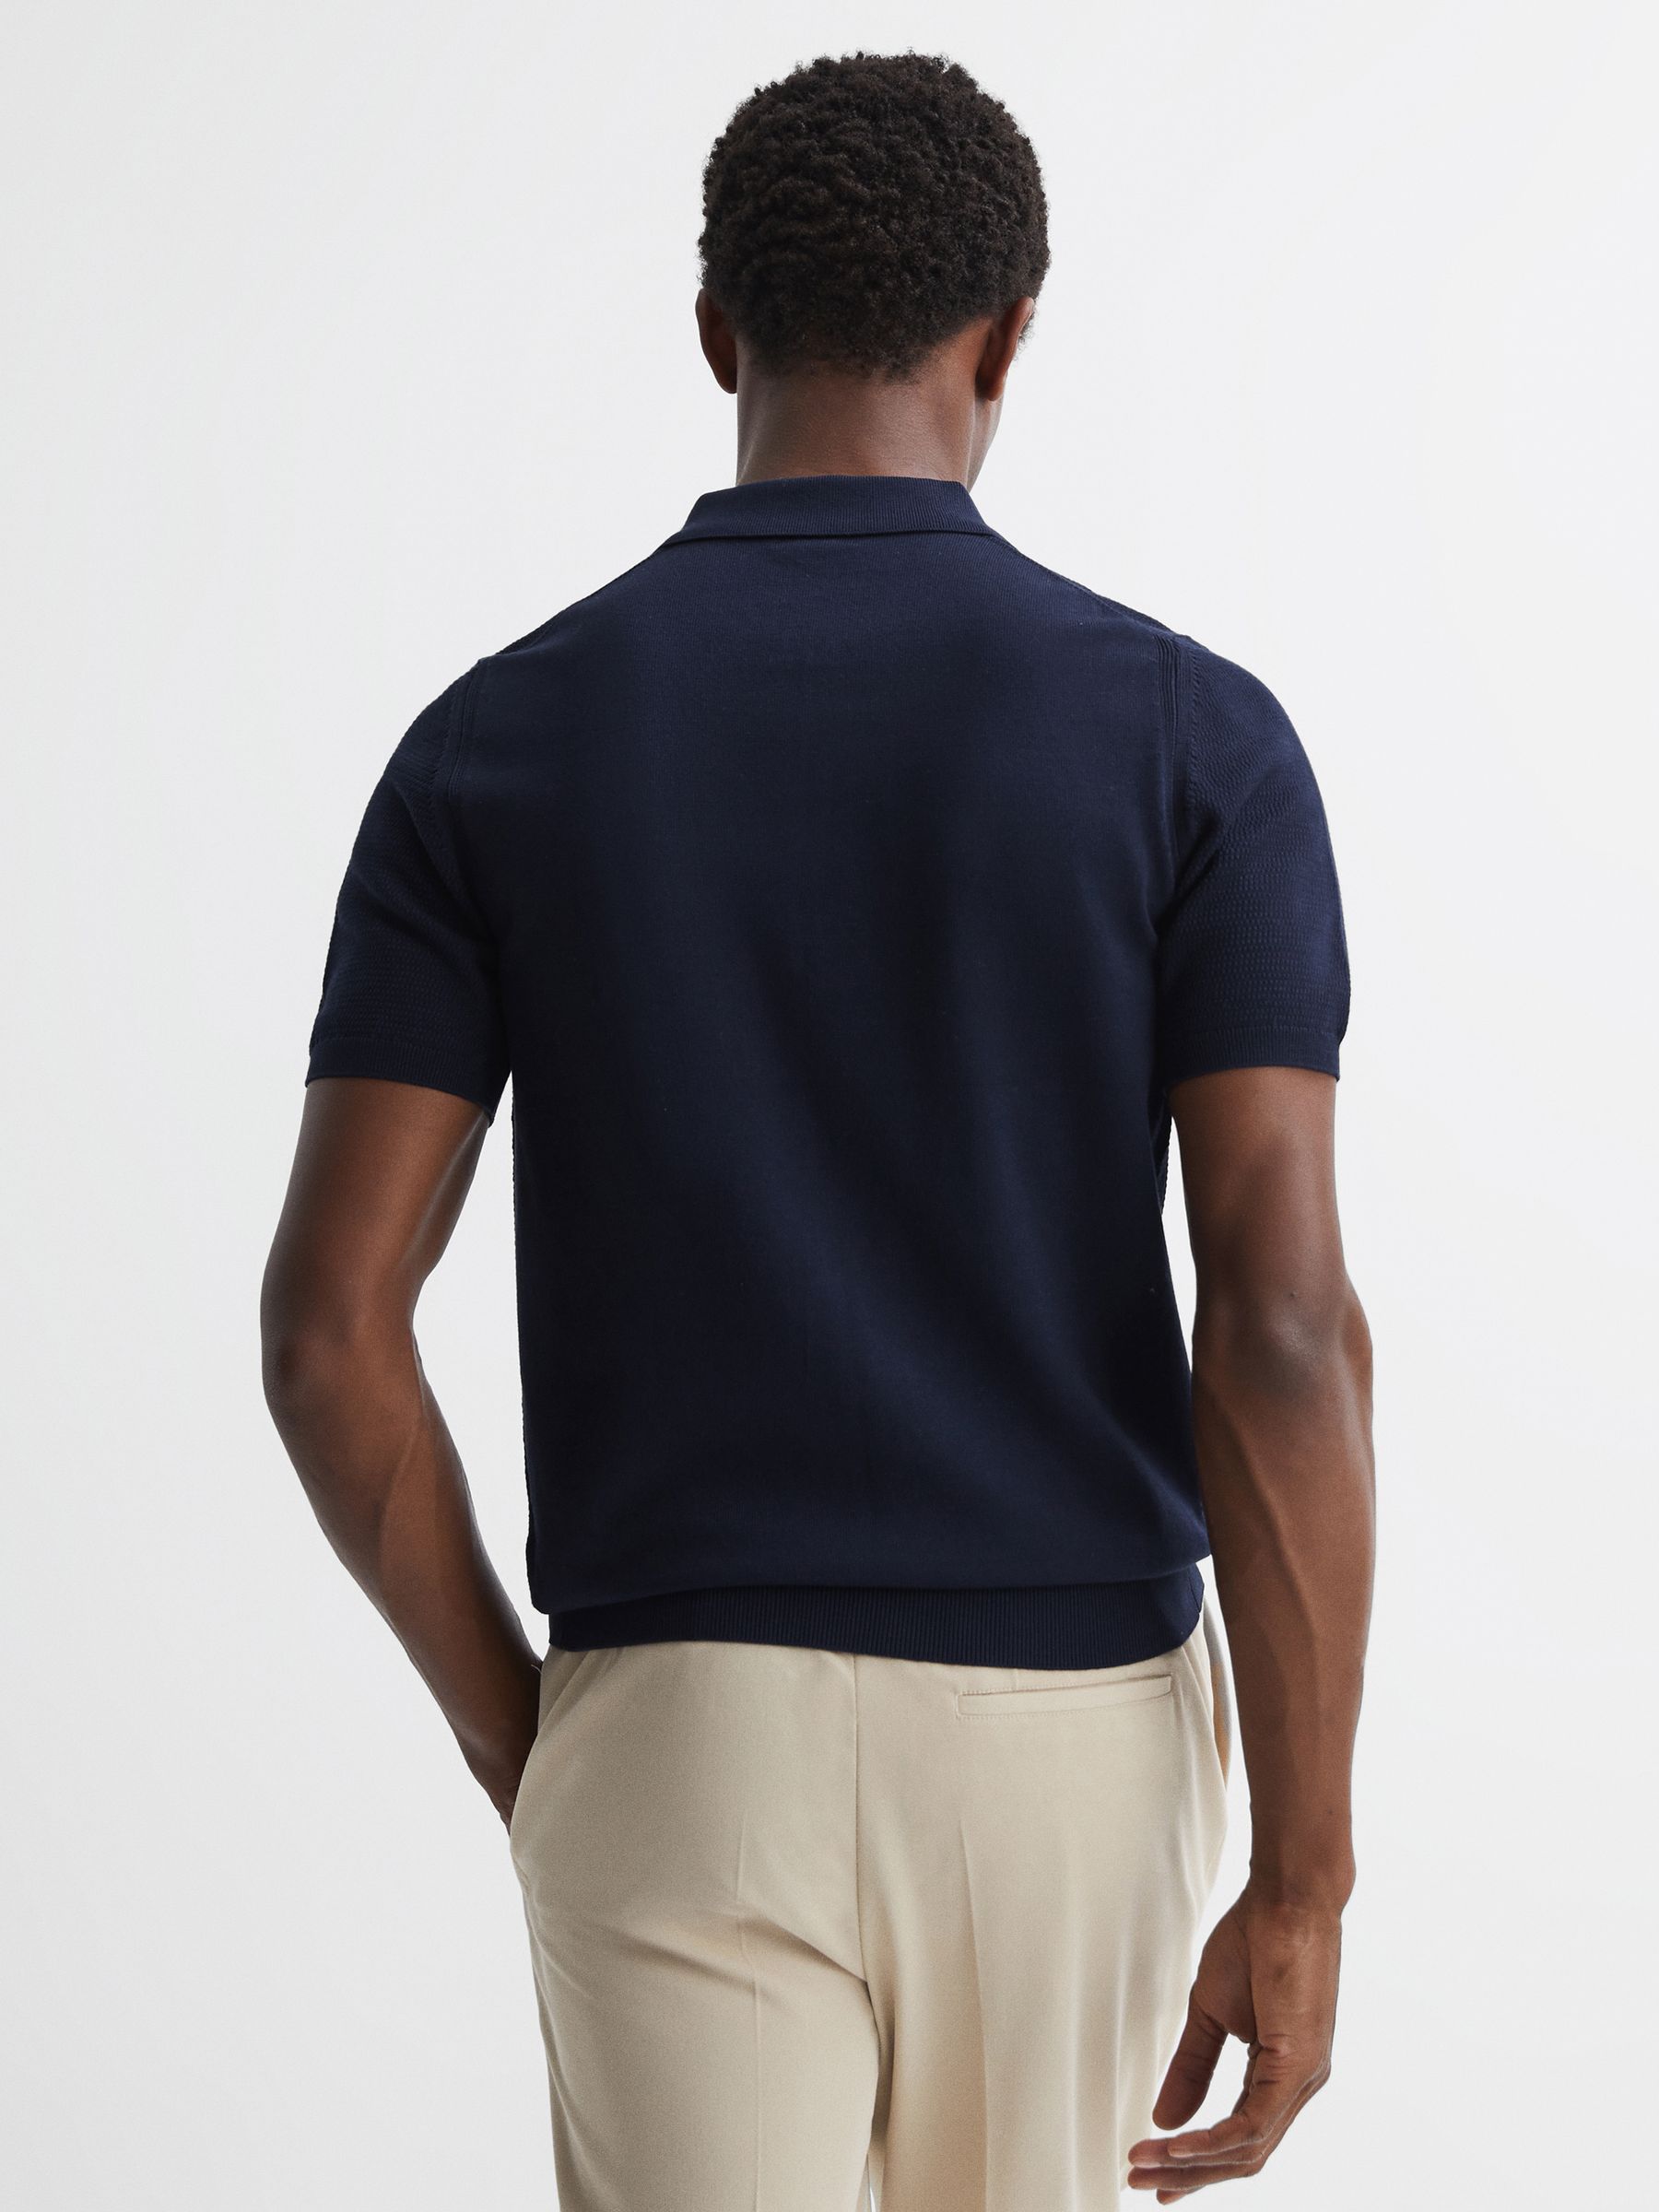 Reiss Fizz Knitted Half-Zip Polo T-Shirt | REISS USA